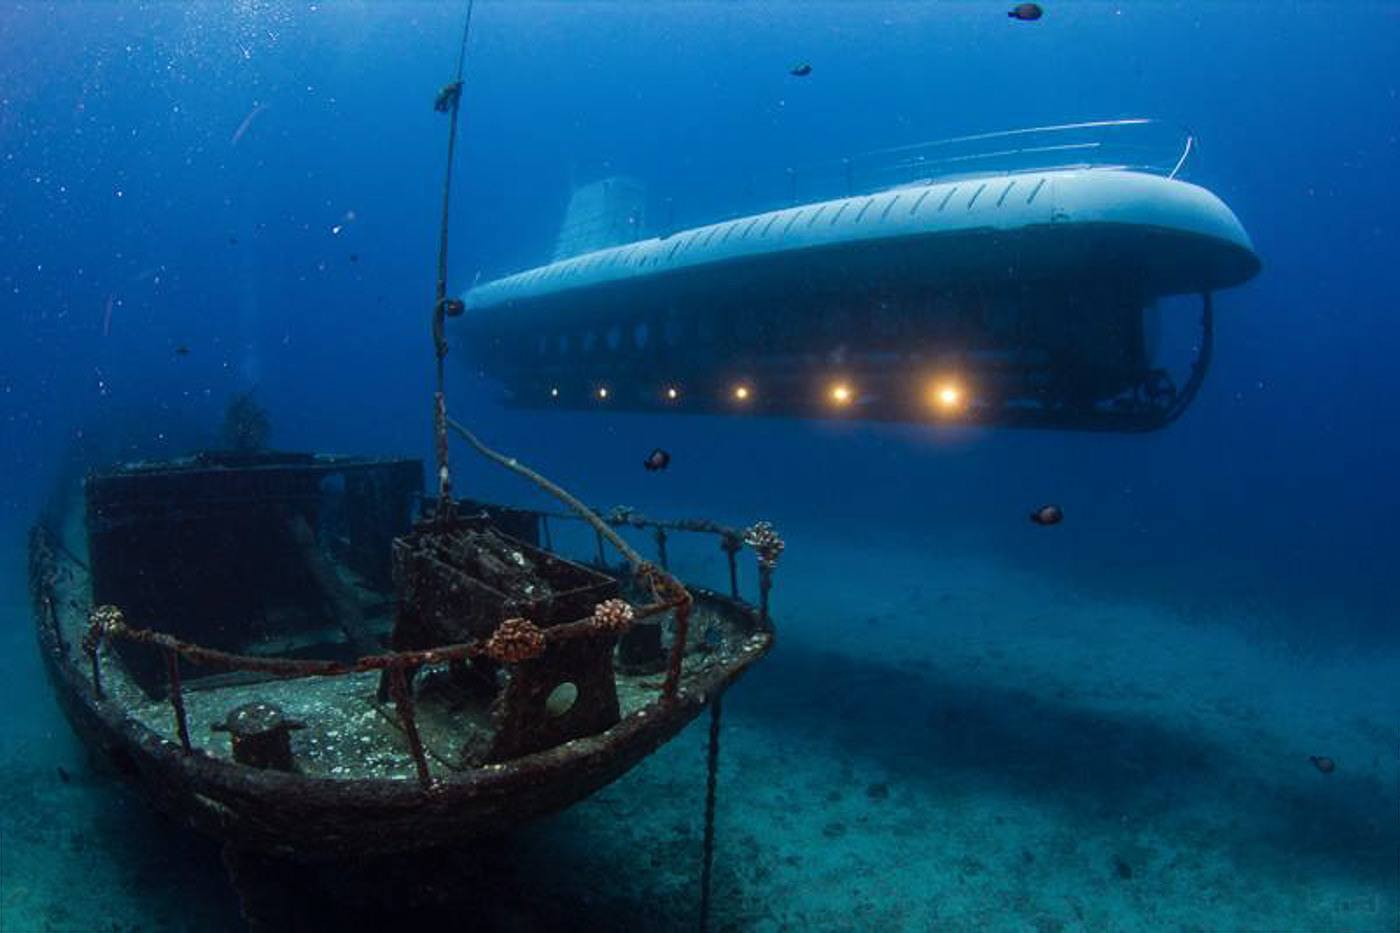 Atlantis Submarine Tour in Waikiki, Hawaii: Blog Review